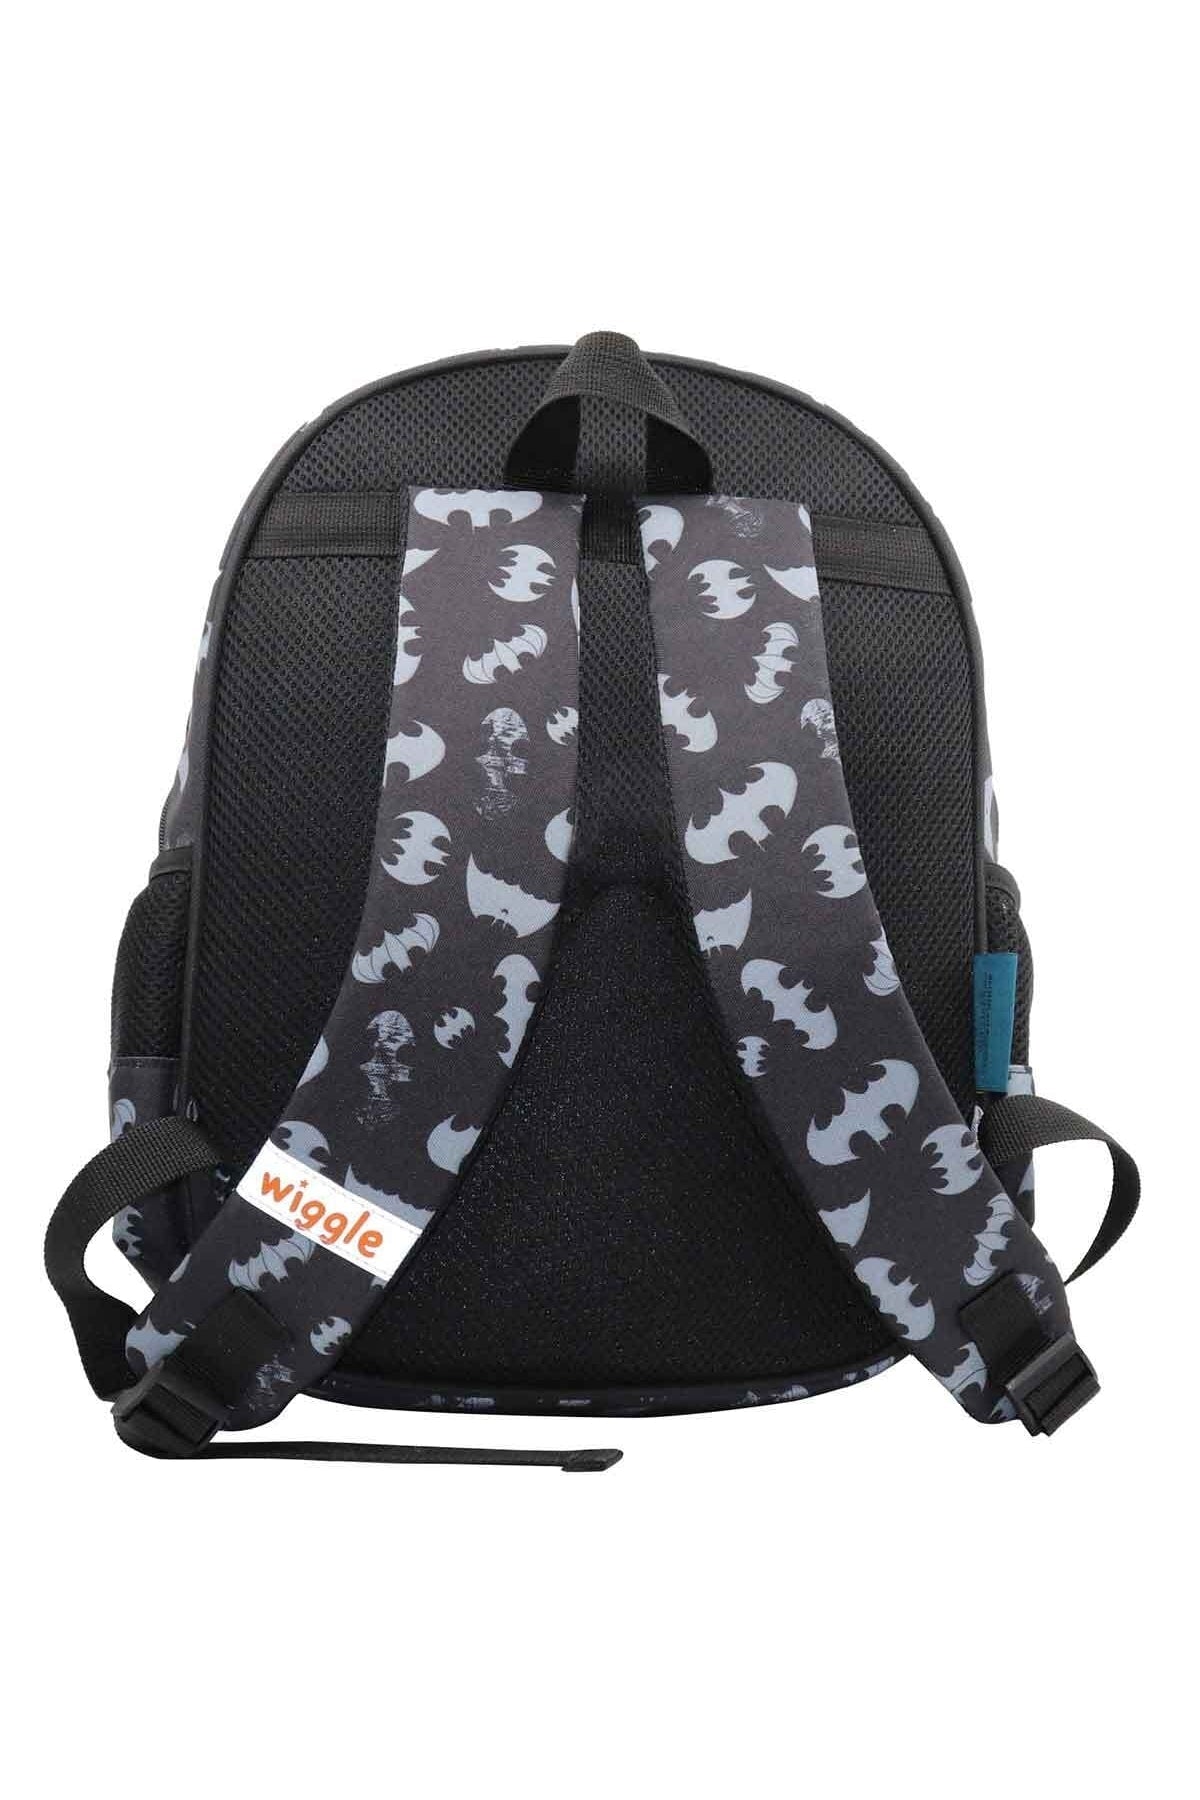 Batman School Backpack And Pencil Bag Set